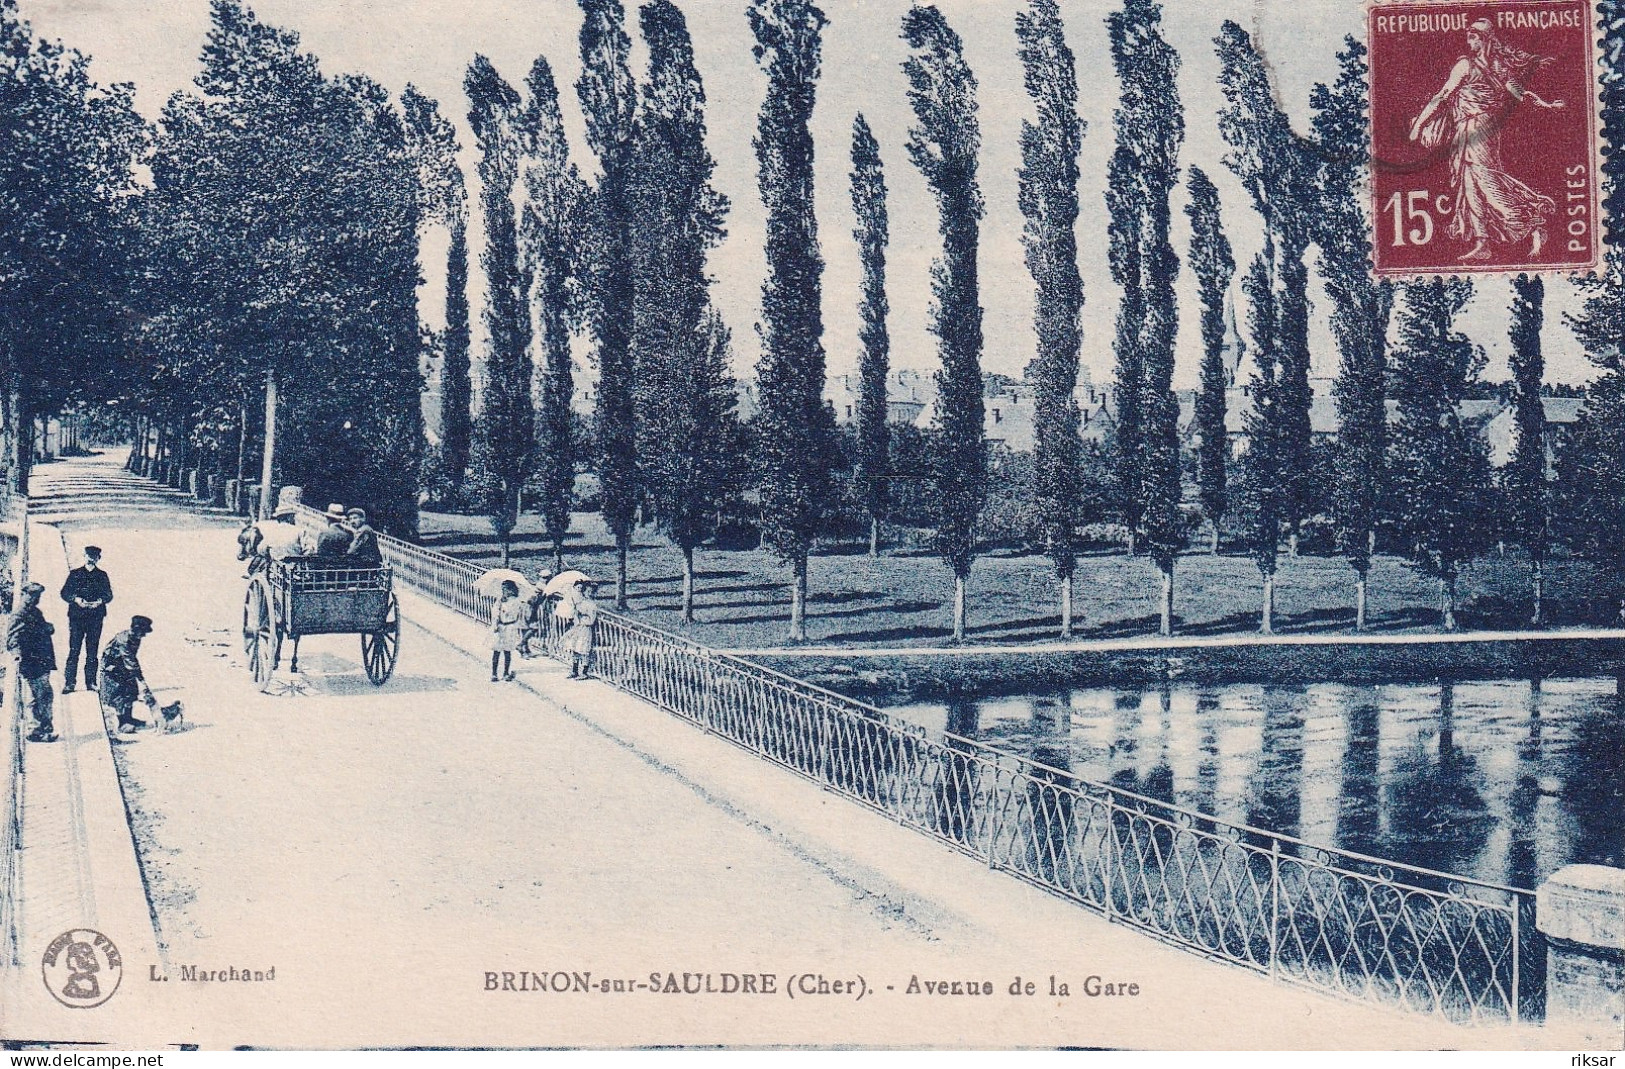 BRINON DUE SAULDRE - Brinon-sur-Sauldre